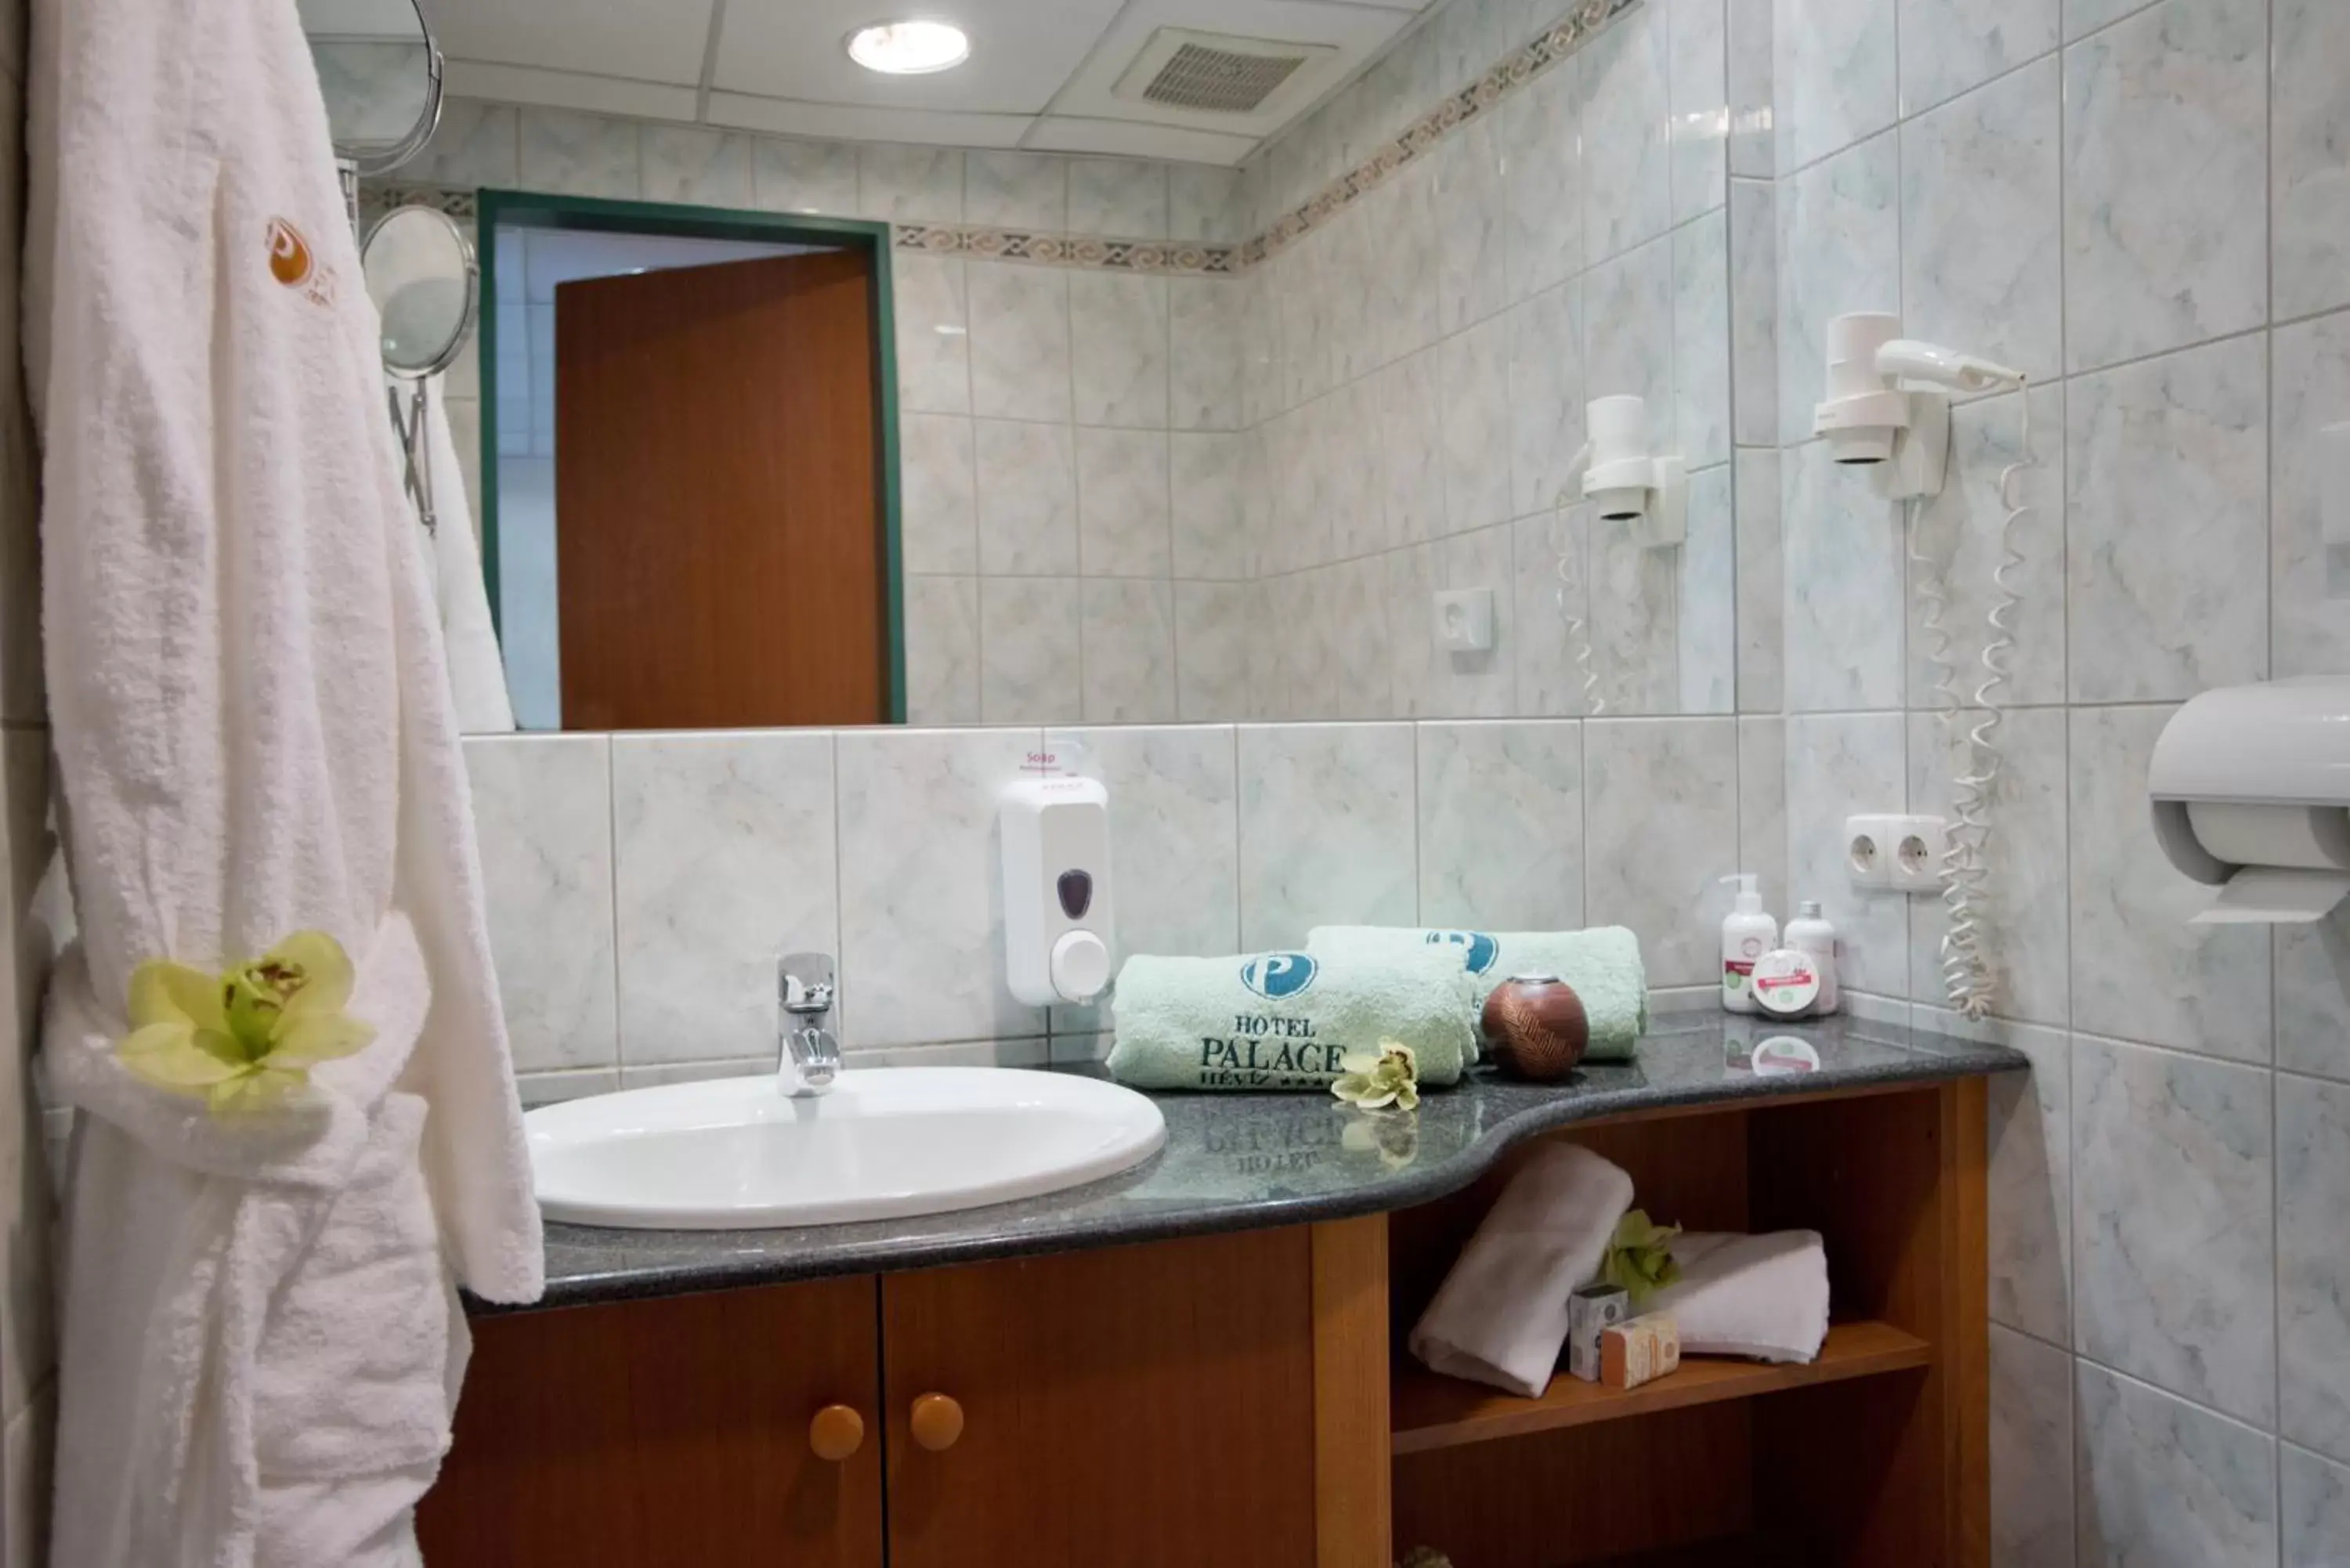 Bathroom in Palace Hotel Hévíz